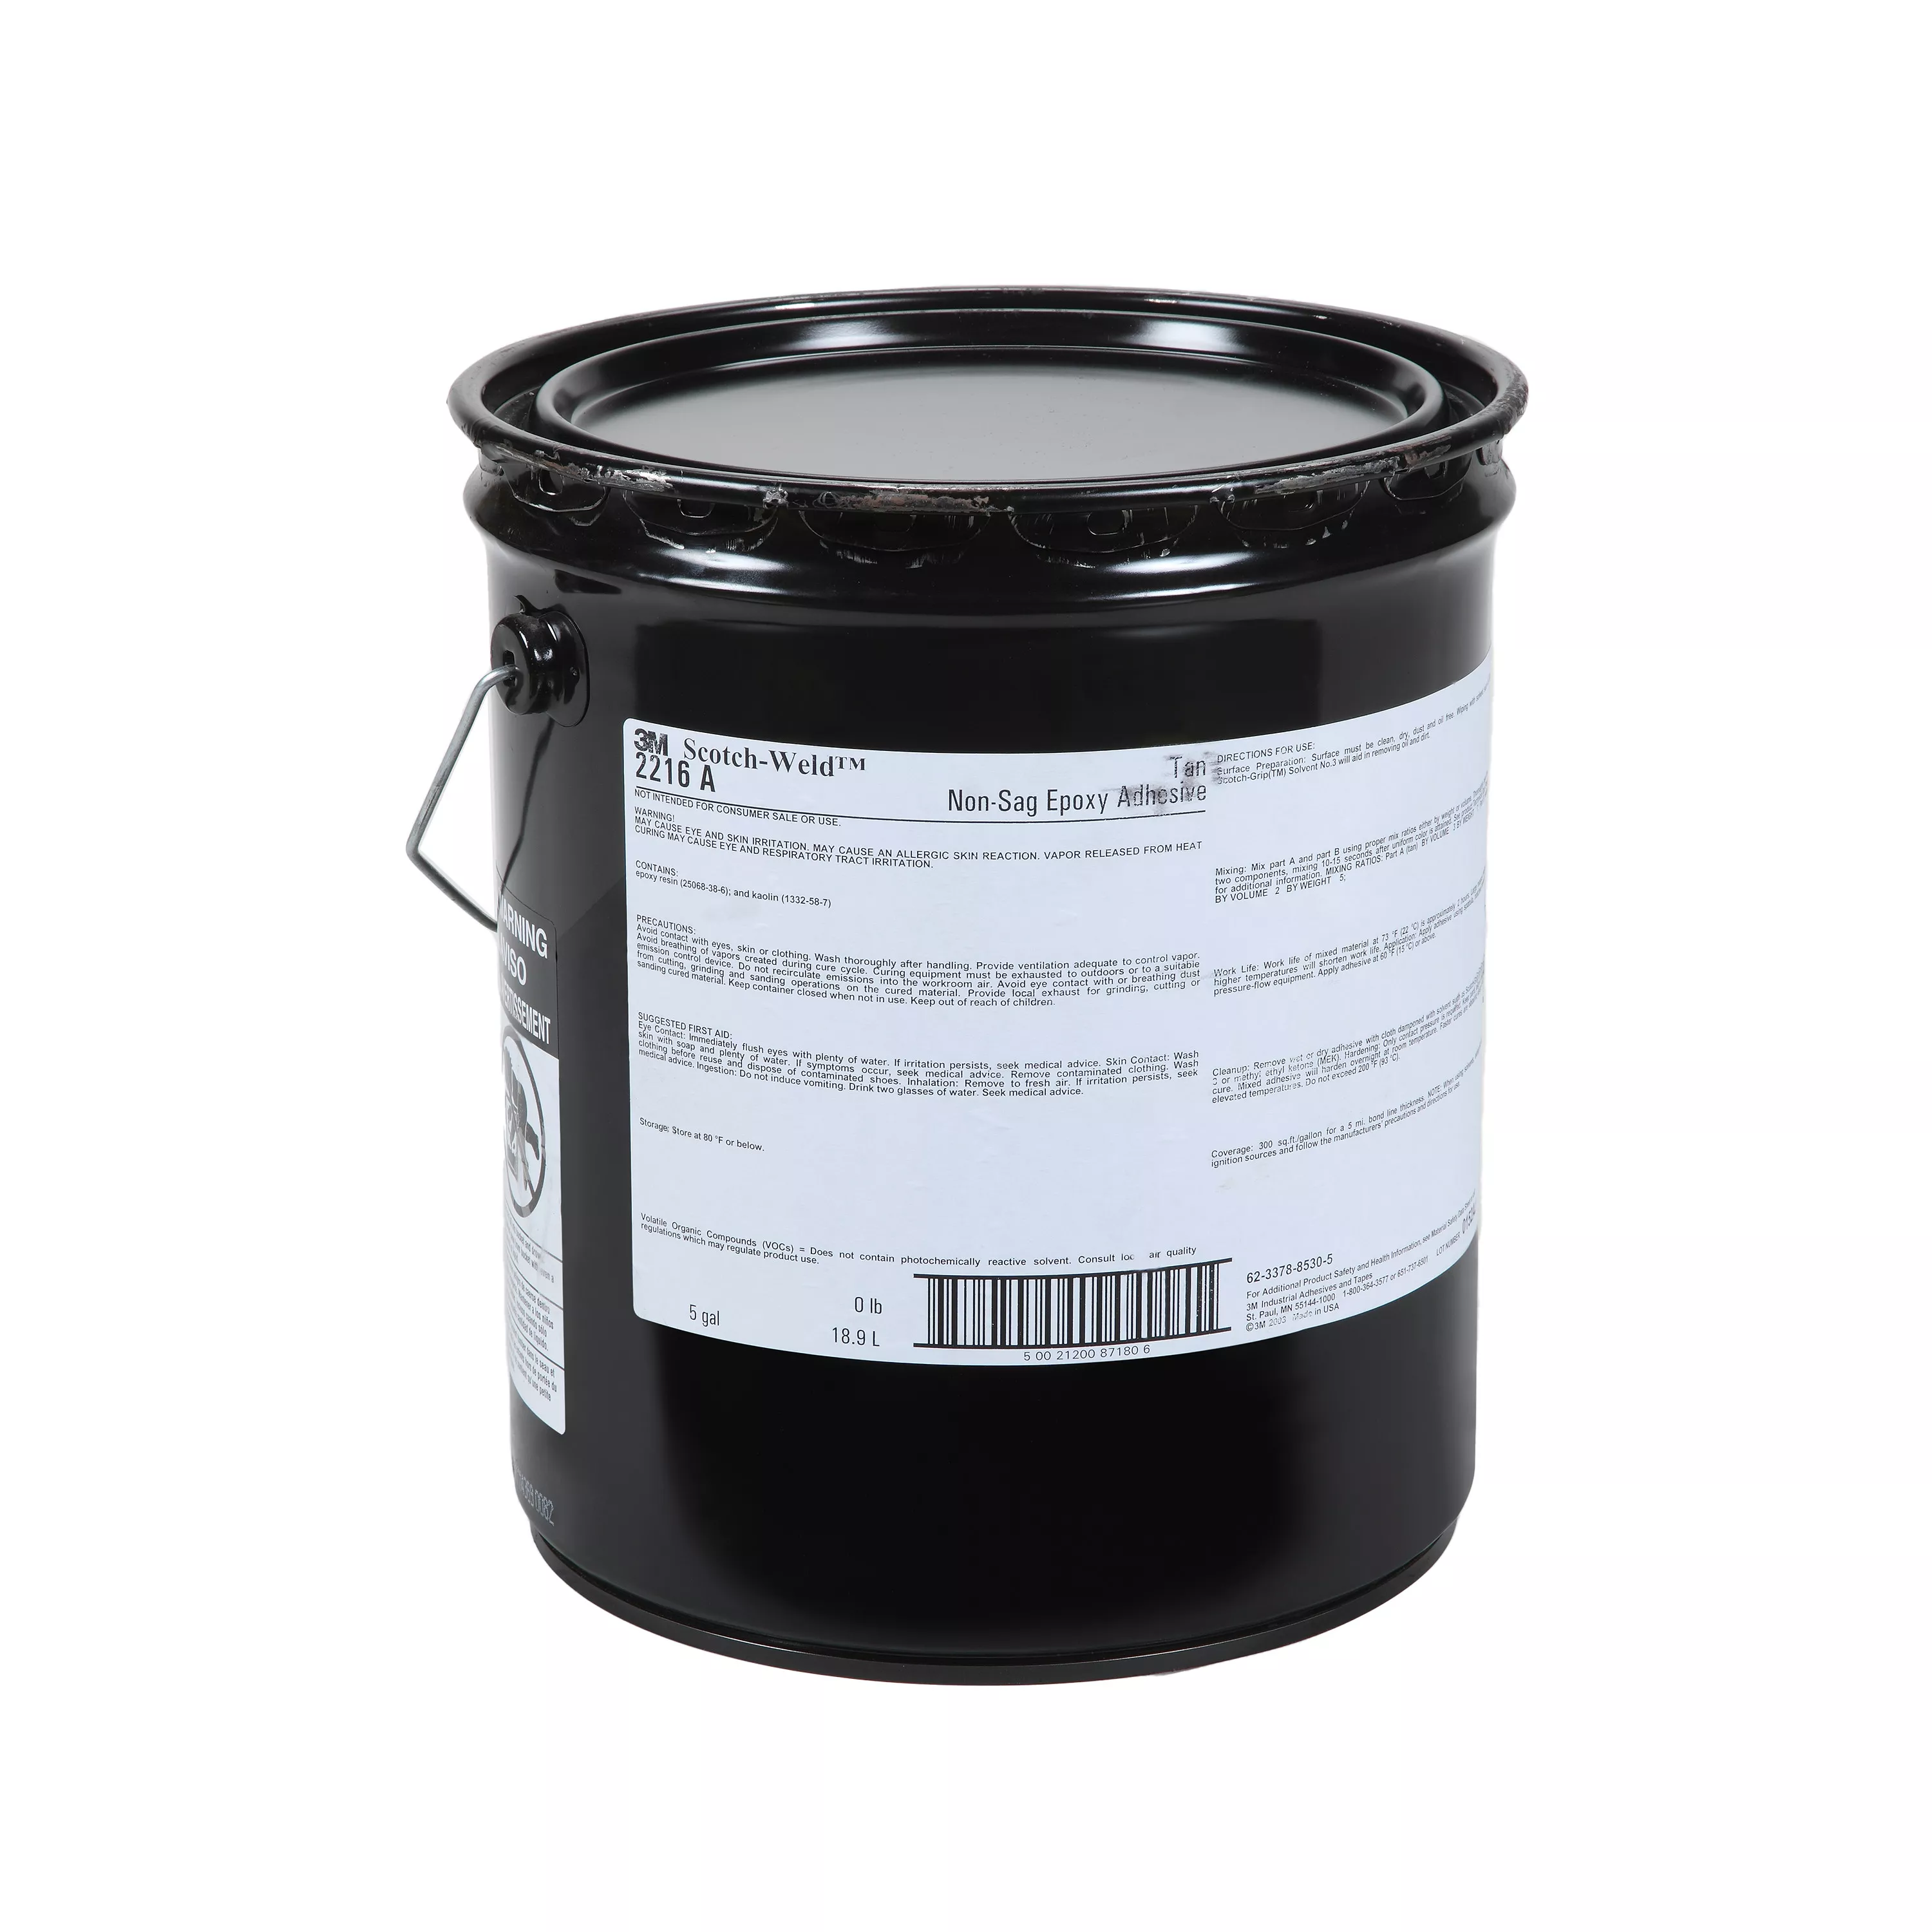 3M™ Scotch-Weld™ Epoxy Adhesive 2216NS, Tan, Part A, 5 Gallon (Pail),
Drum